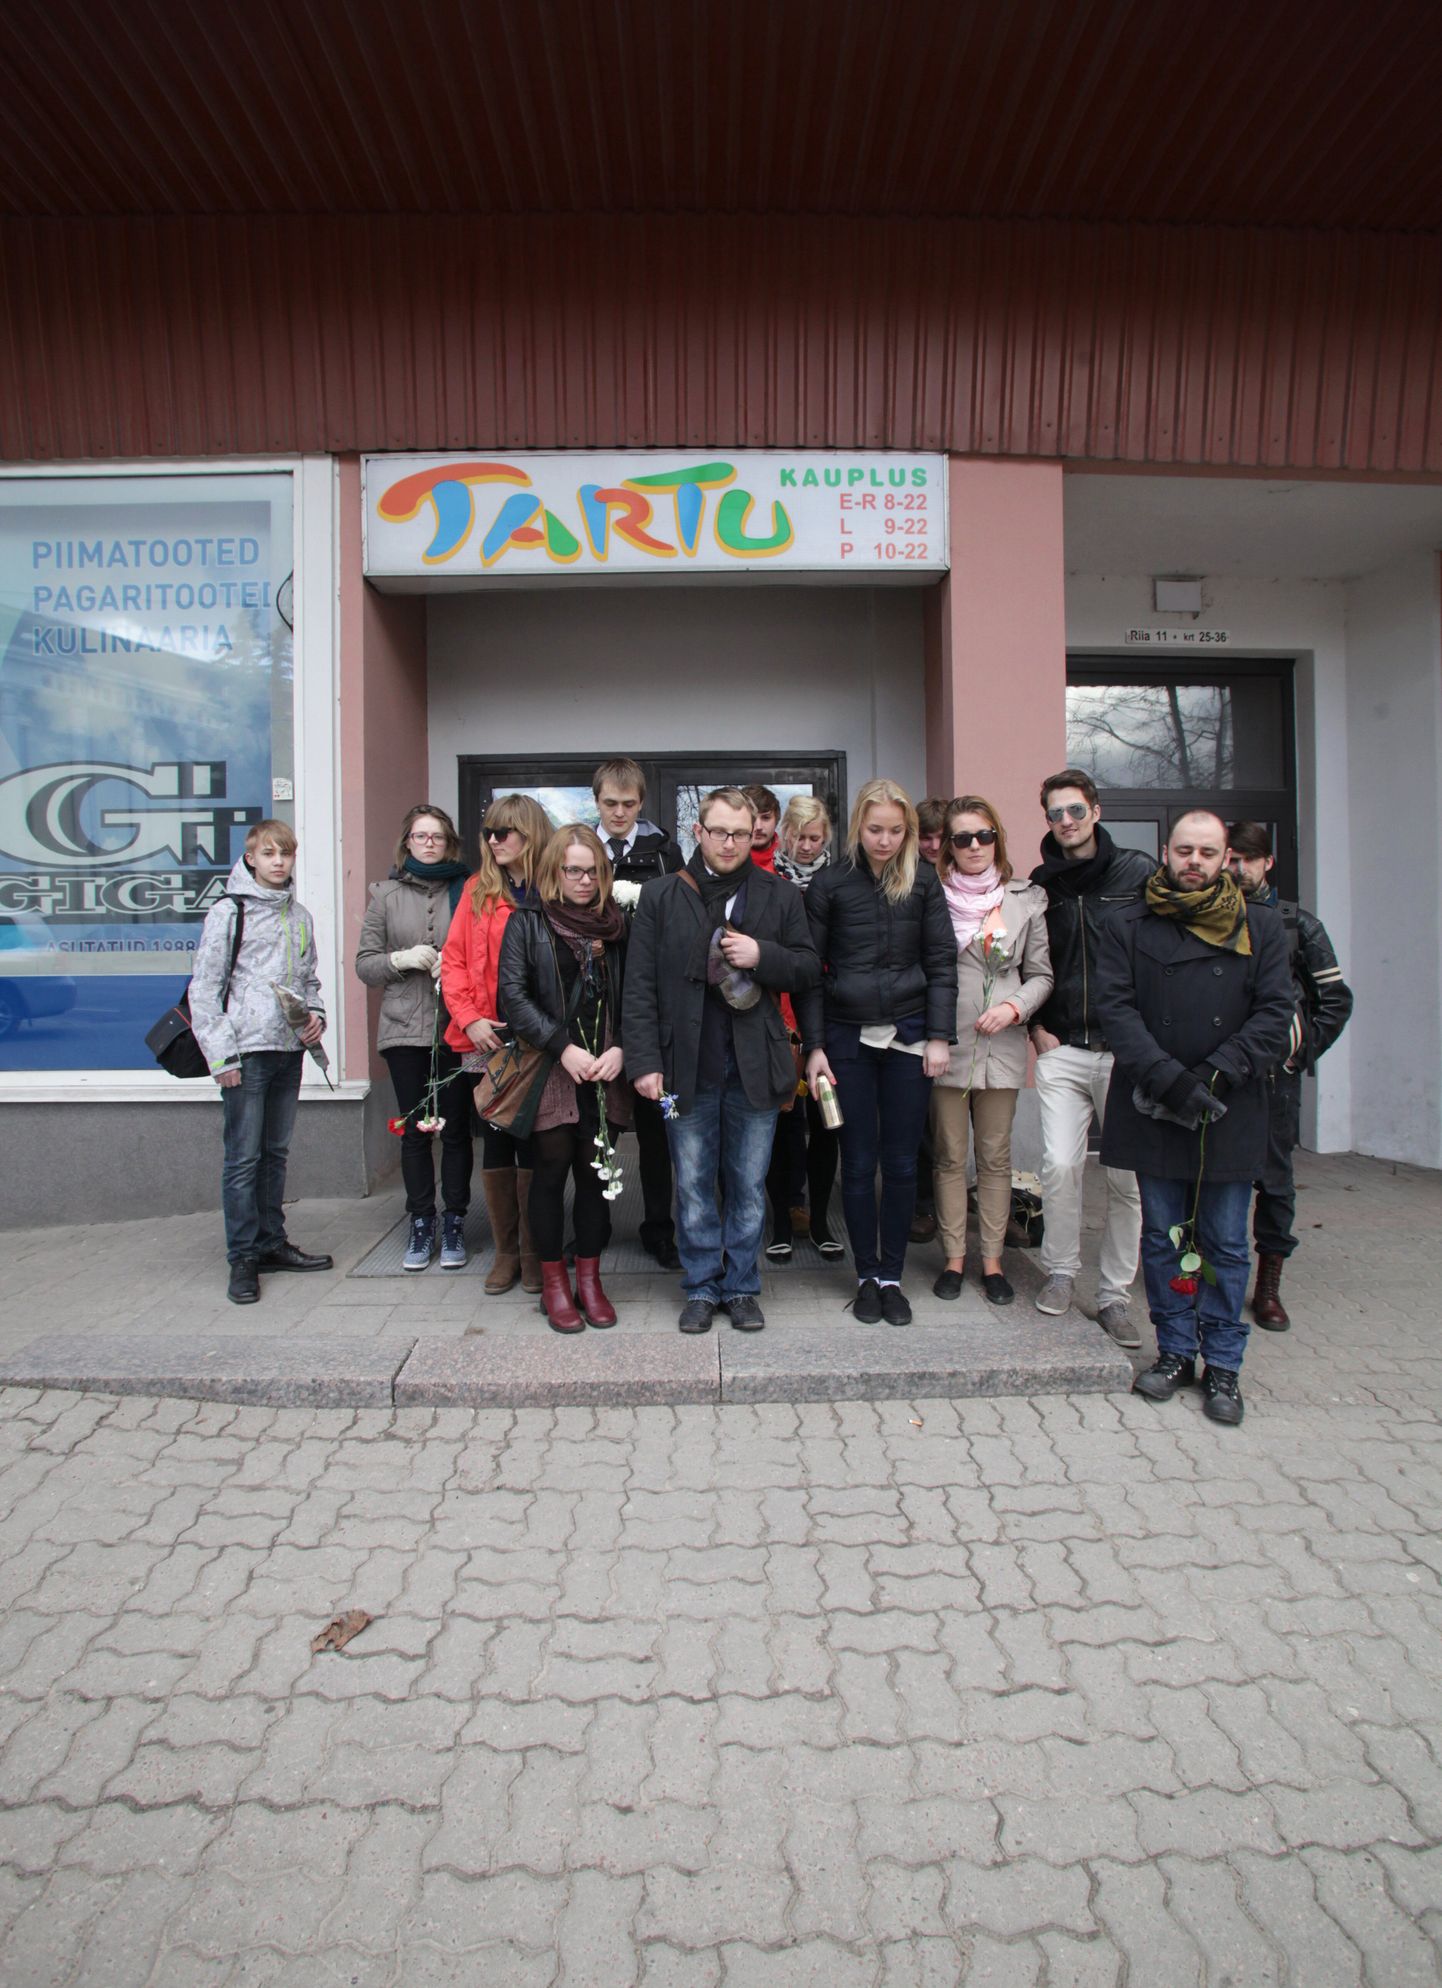 Volbriõhtul kogunesid Tartu poe juurde ostjad, et jätta hüvasti selle kauplusega ning tänada müüjaid nende pikajalise töö eest.